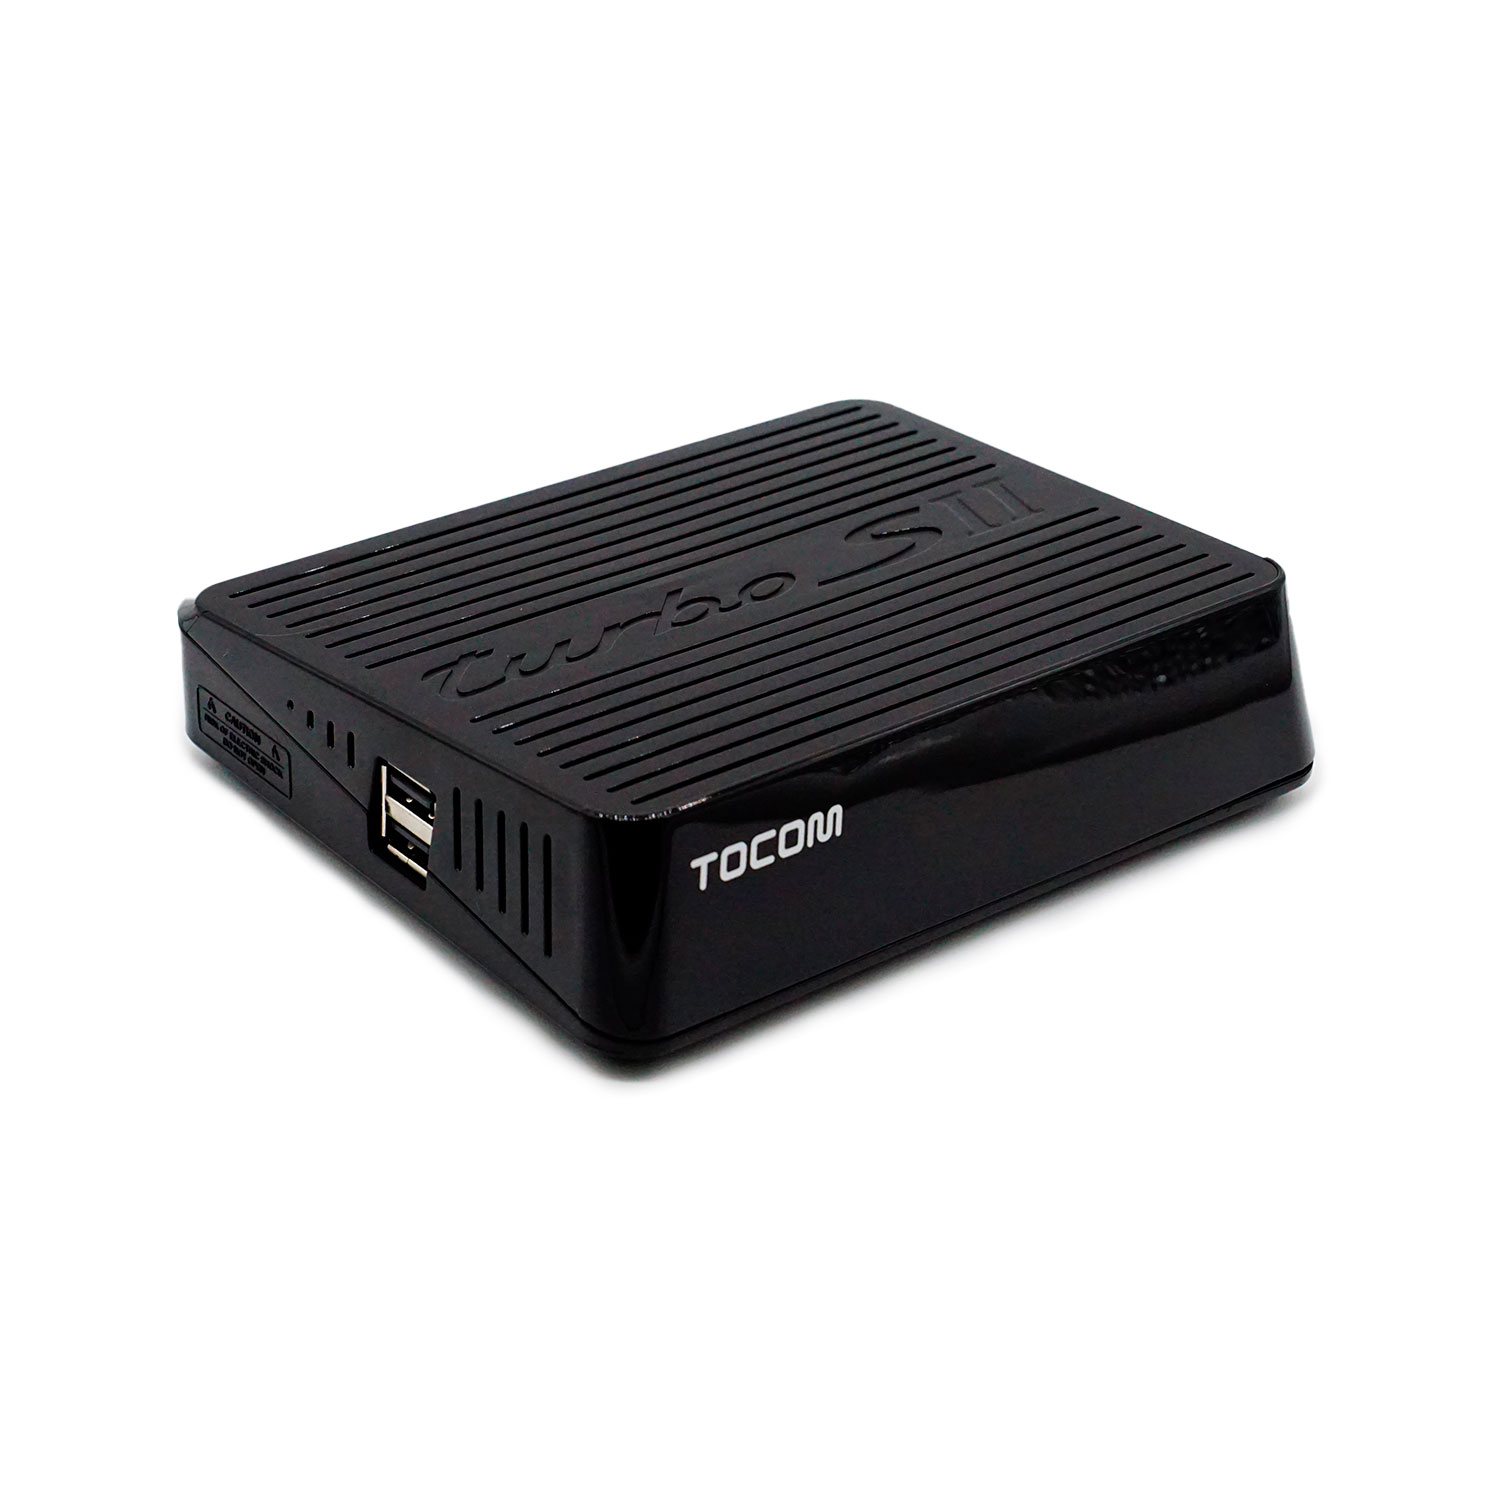 Receptor Tocomsat Turbo S II Full HD Wi-Fi - Preto